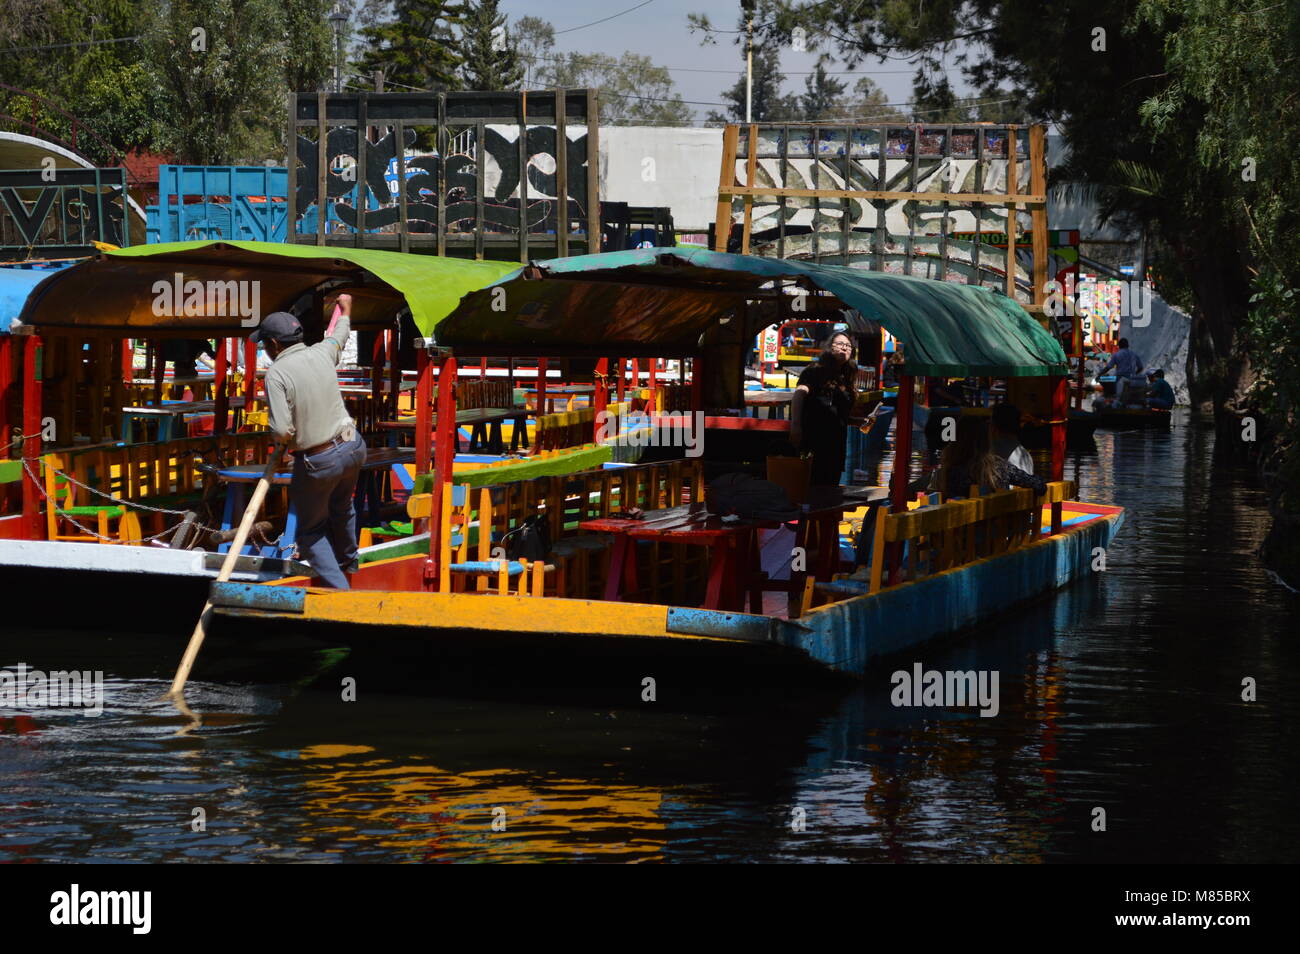 A man steering a trajinera in Xochimilco, Mexico City Stock Photo